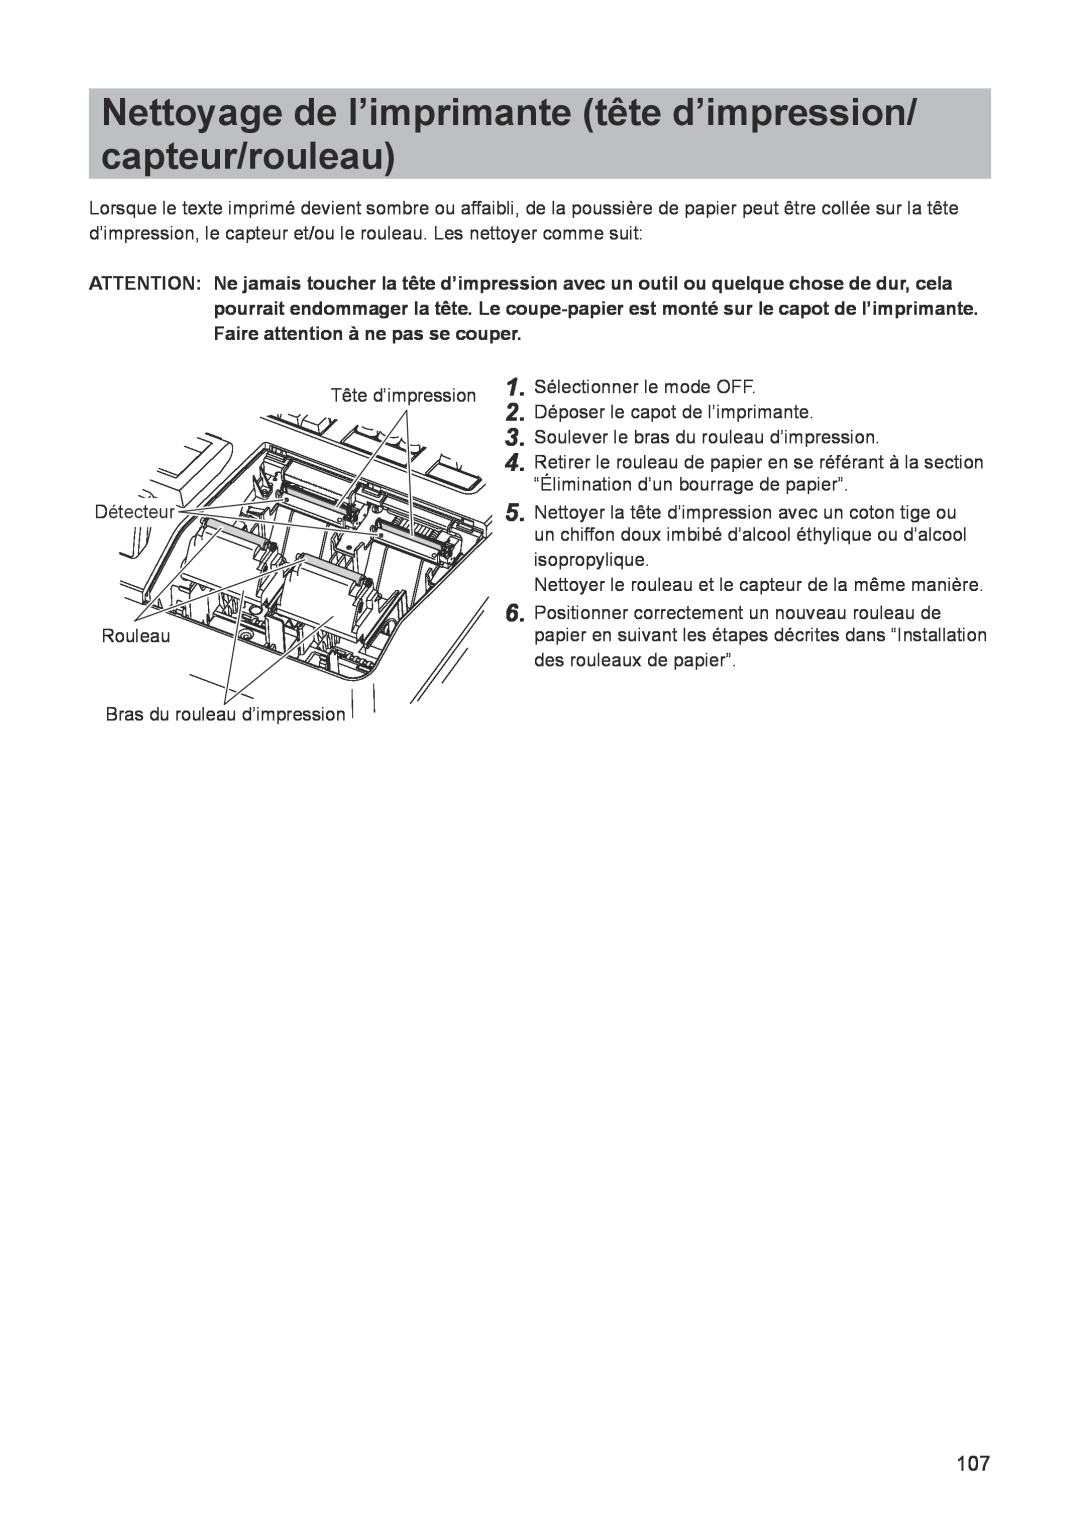 Sharp ER-A347A instruction manual Nettoyage de l’imprimante tête d’impression/ capteur/rouleau 